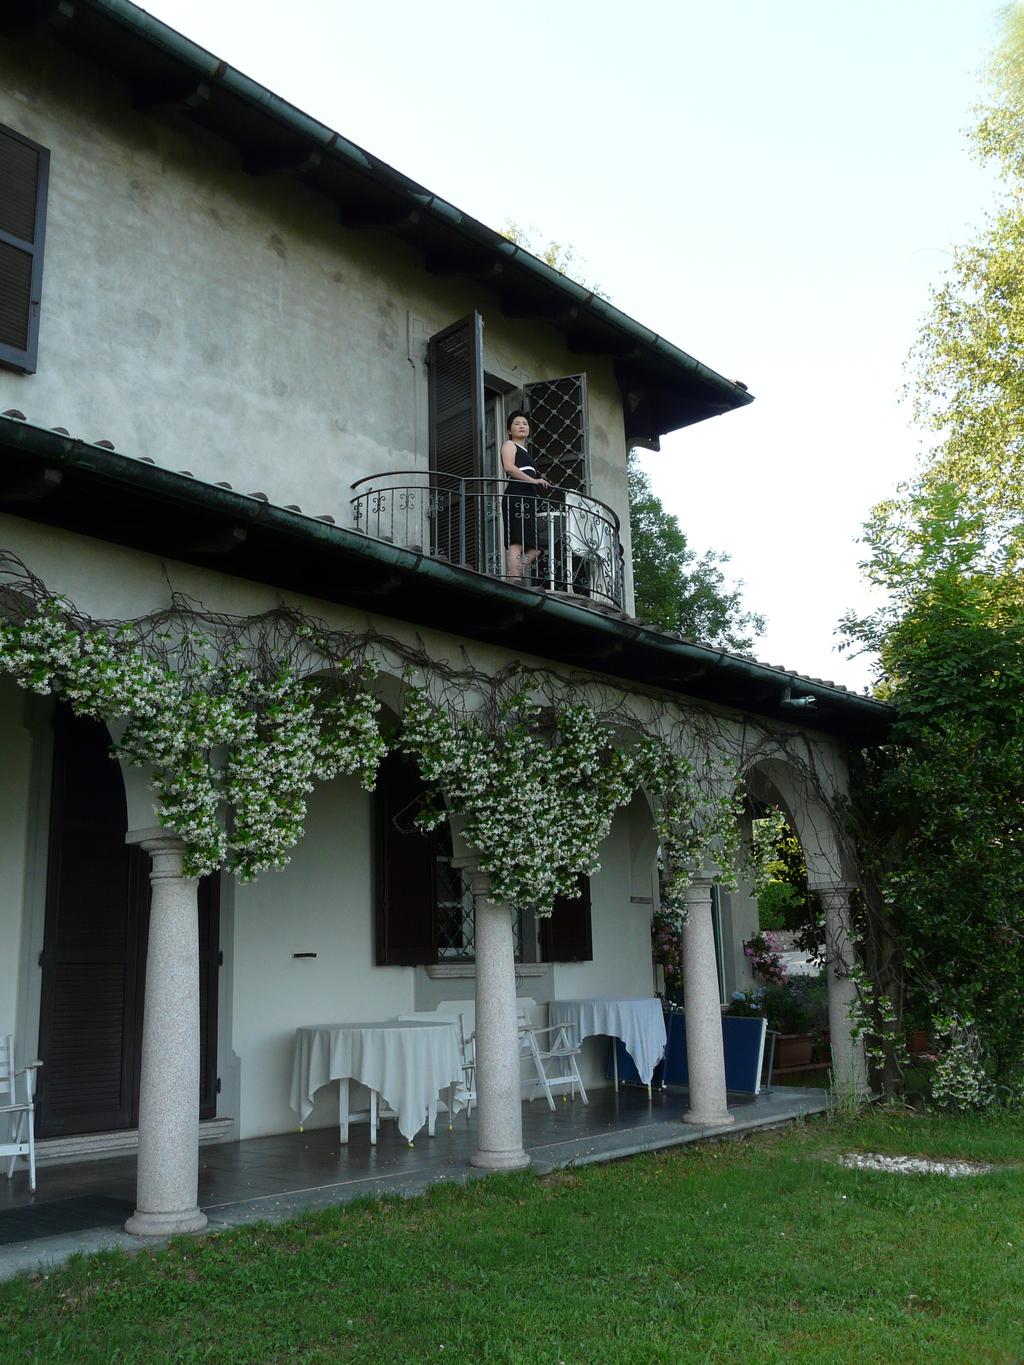 I-25086 Rezzato, Via Mazzini 14, 0039-030-279223, info@villafenaroli.it Giardino degli Abeti, San Martino, Arizzano Eine alte Villa oberhalb des Lago Maggiore, nördlich von Stresa.